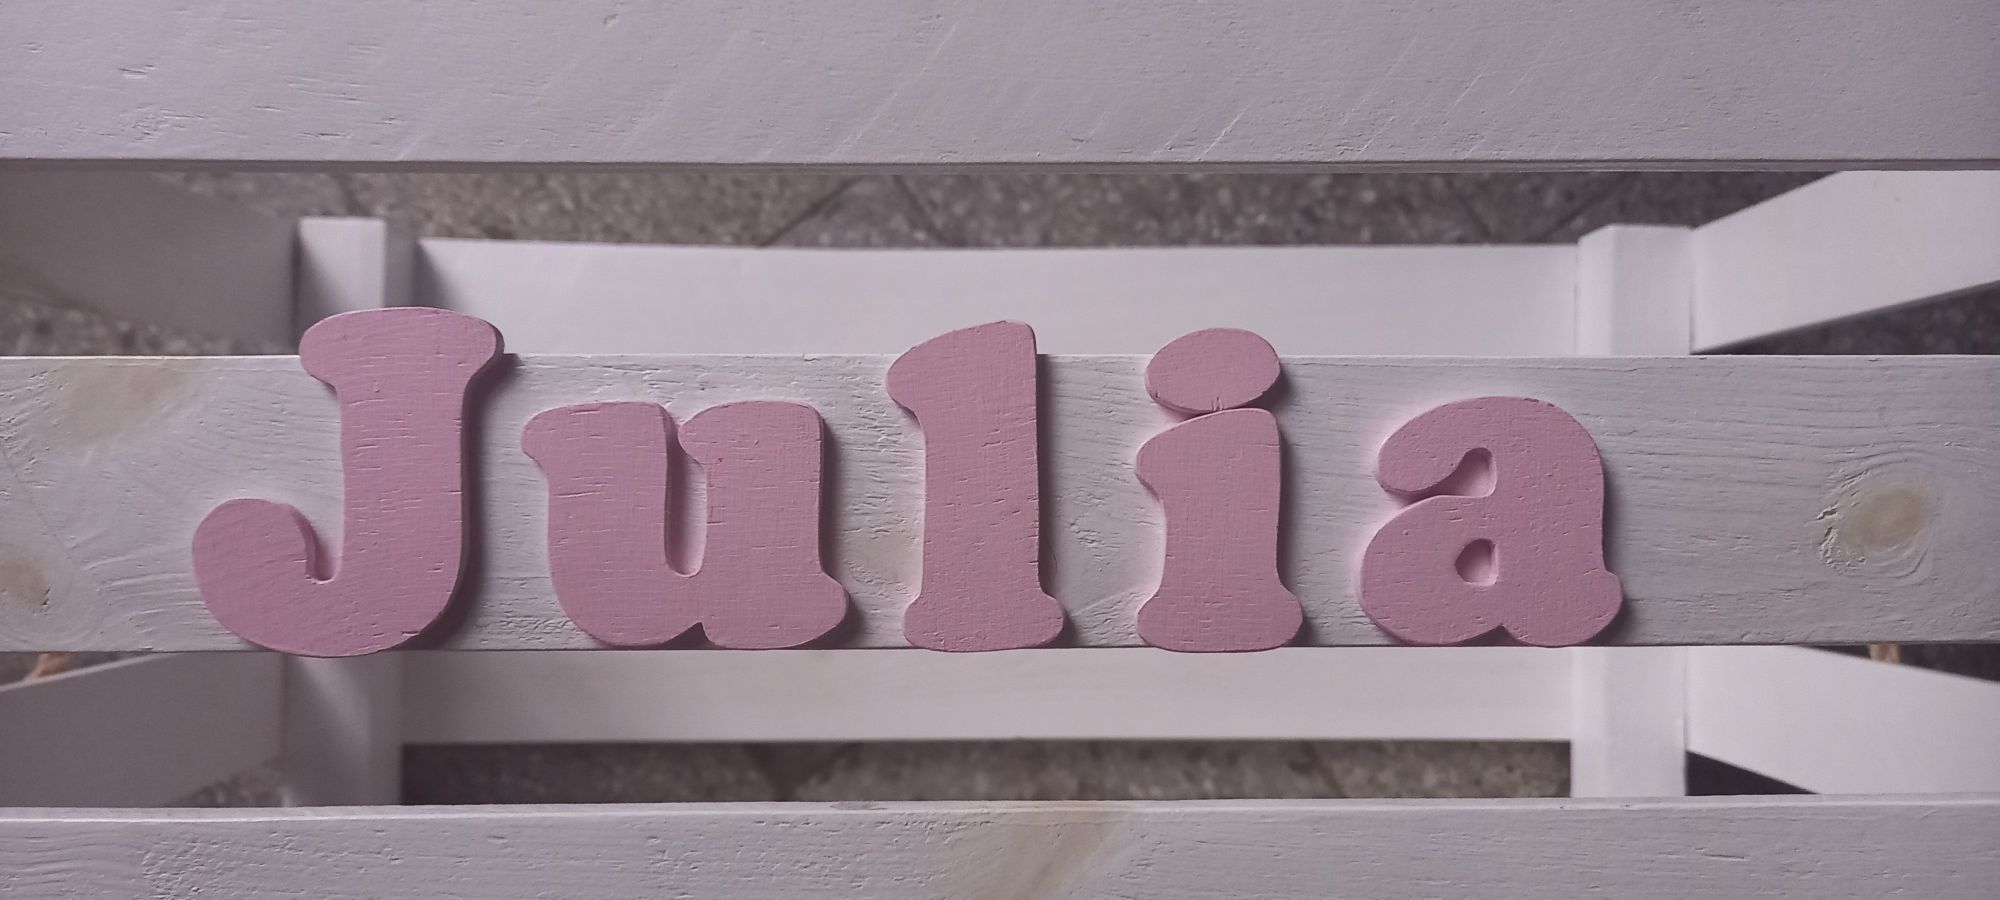 Skrzynia na zabawki Julia skrzynka duża z imieniem dla dziewczynki